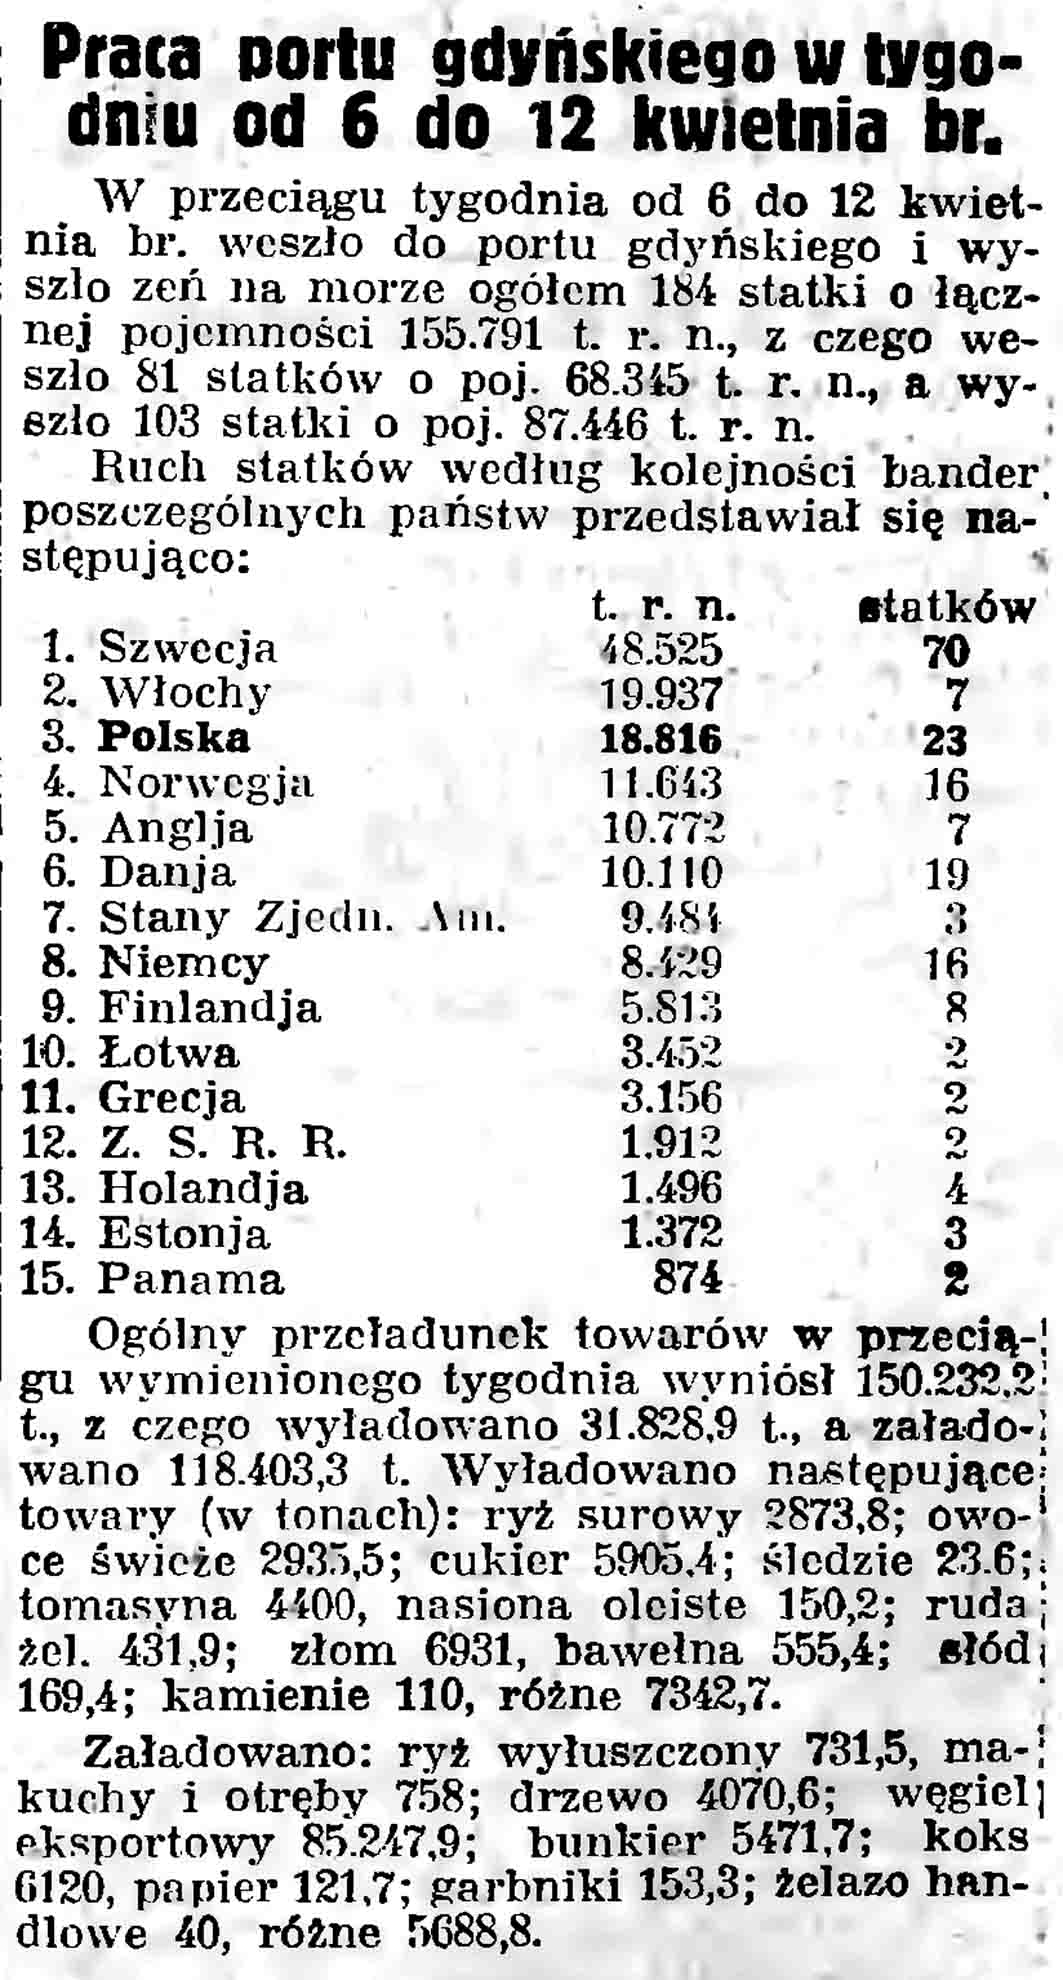 Praca portu gdyńskiego w tygodniu od 6 do 12 kwietnia br // Gazeta Gdańska. - 1937, nr 101, s. 13